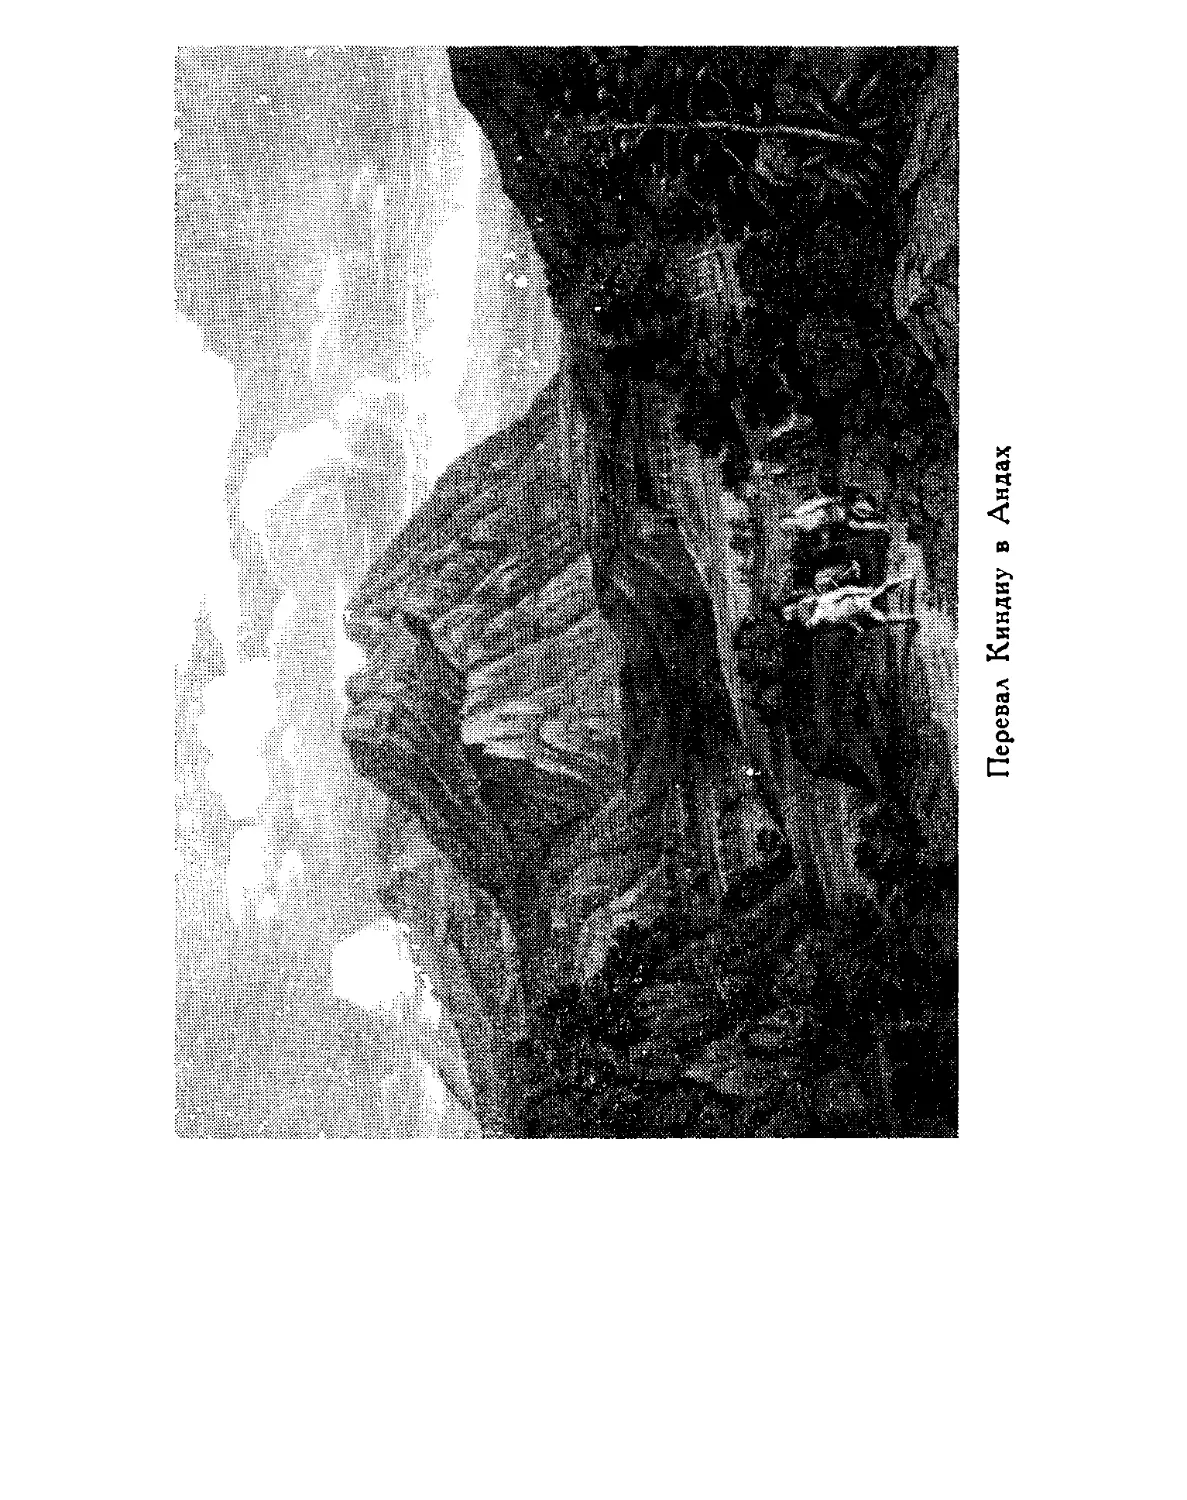 0073_Ãóìáîëüäò. Êàðòèíû Ïðèðîäû 1959_Page_037_Image_0001.tiff